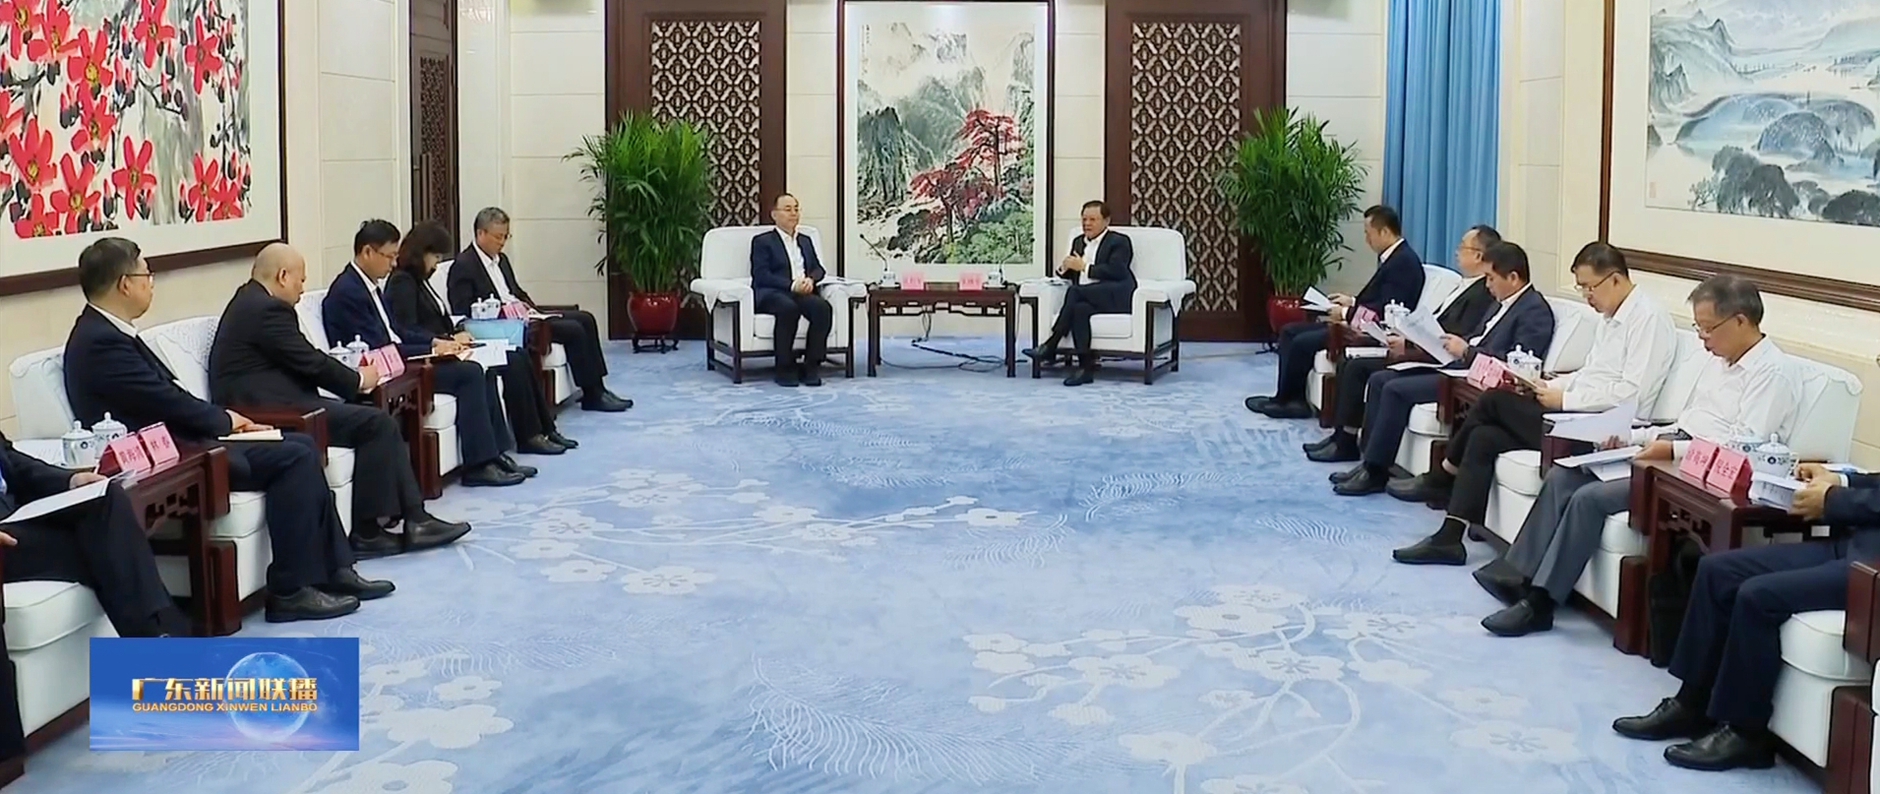 龙8中国与广东省举行工作会谈